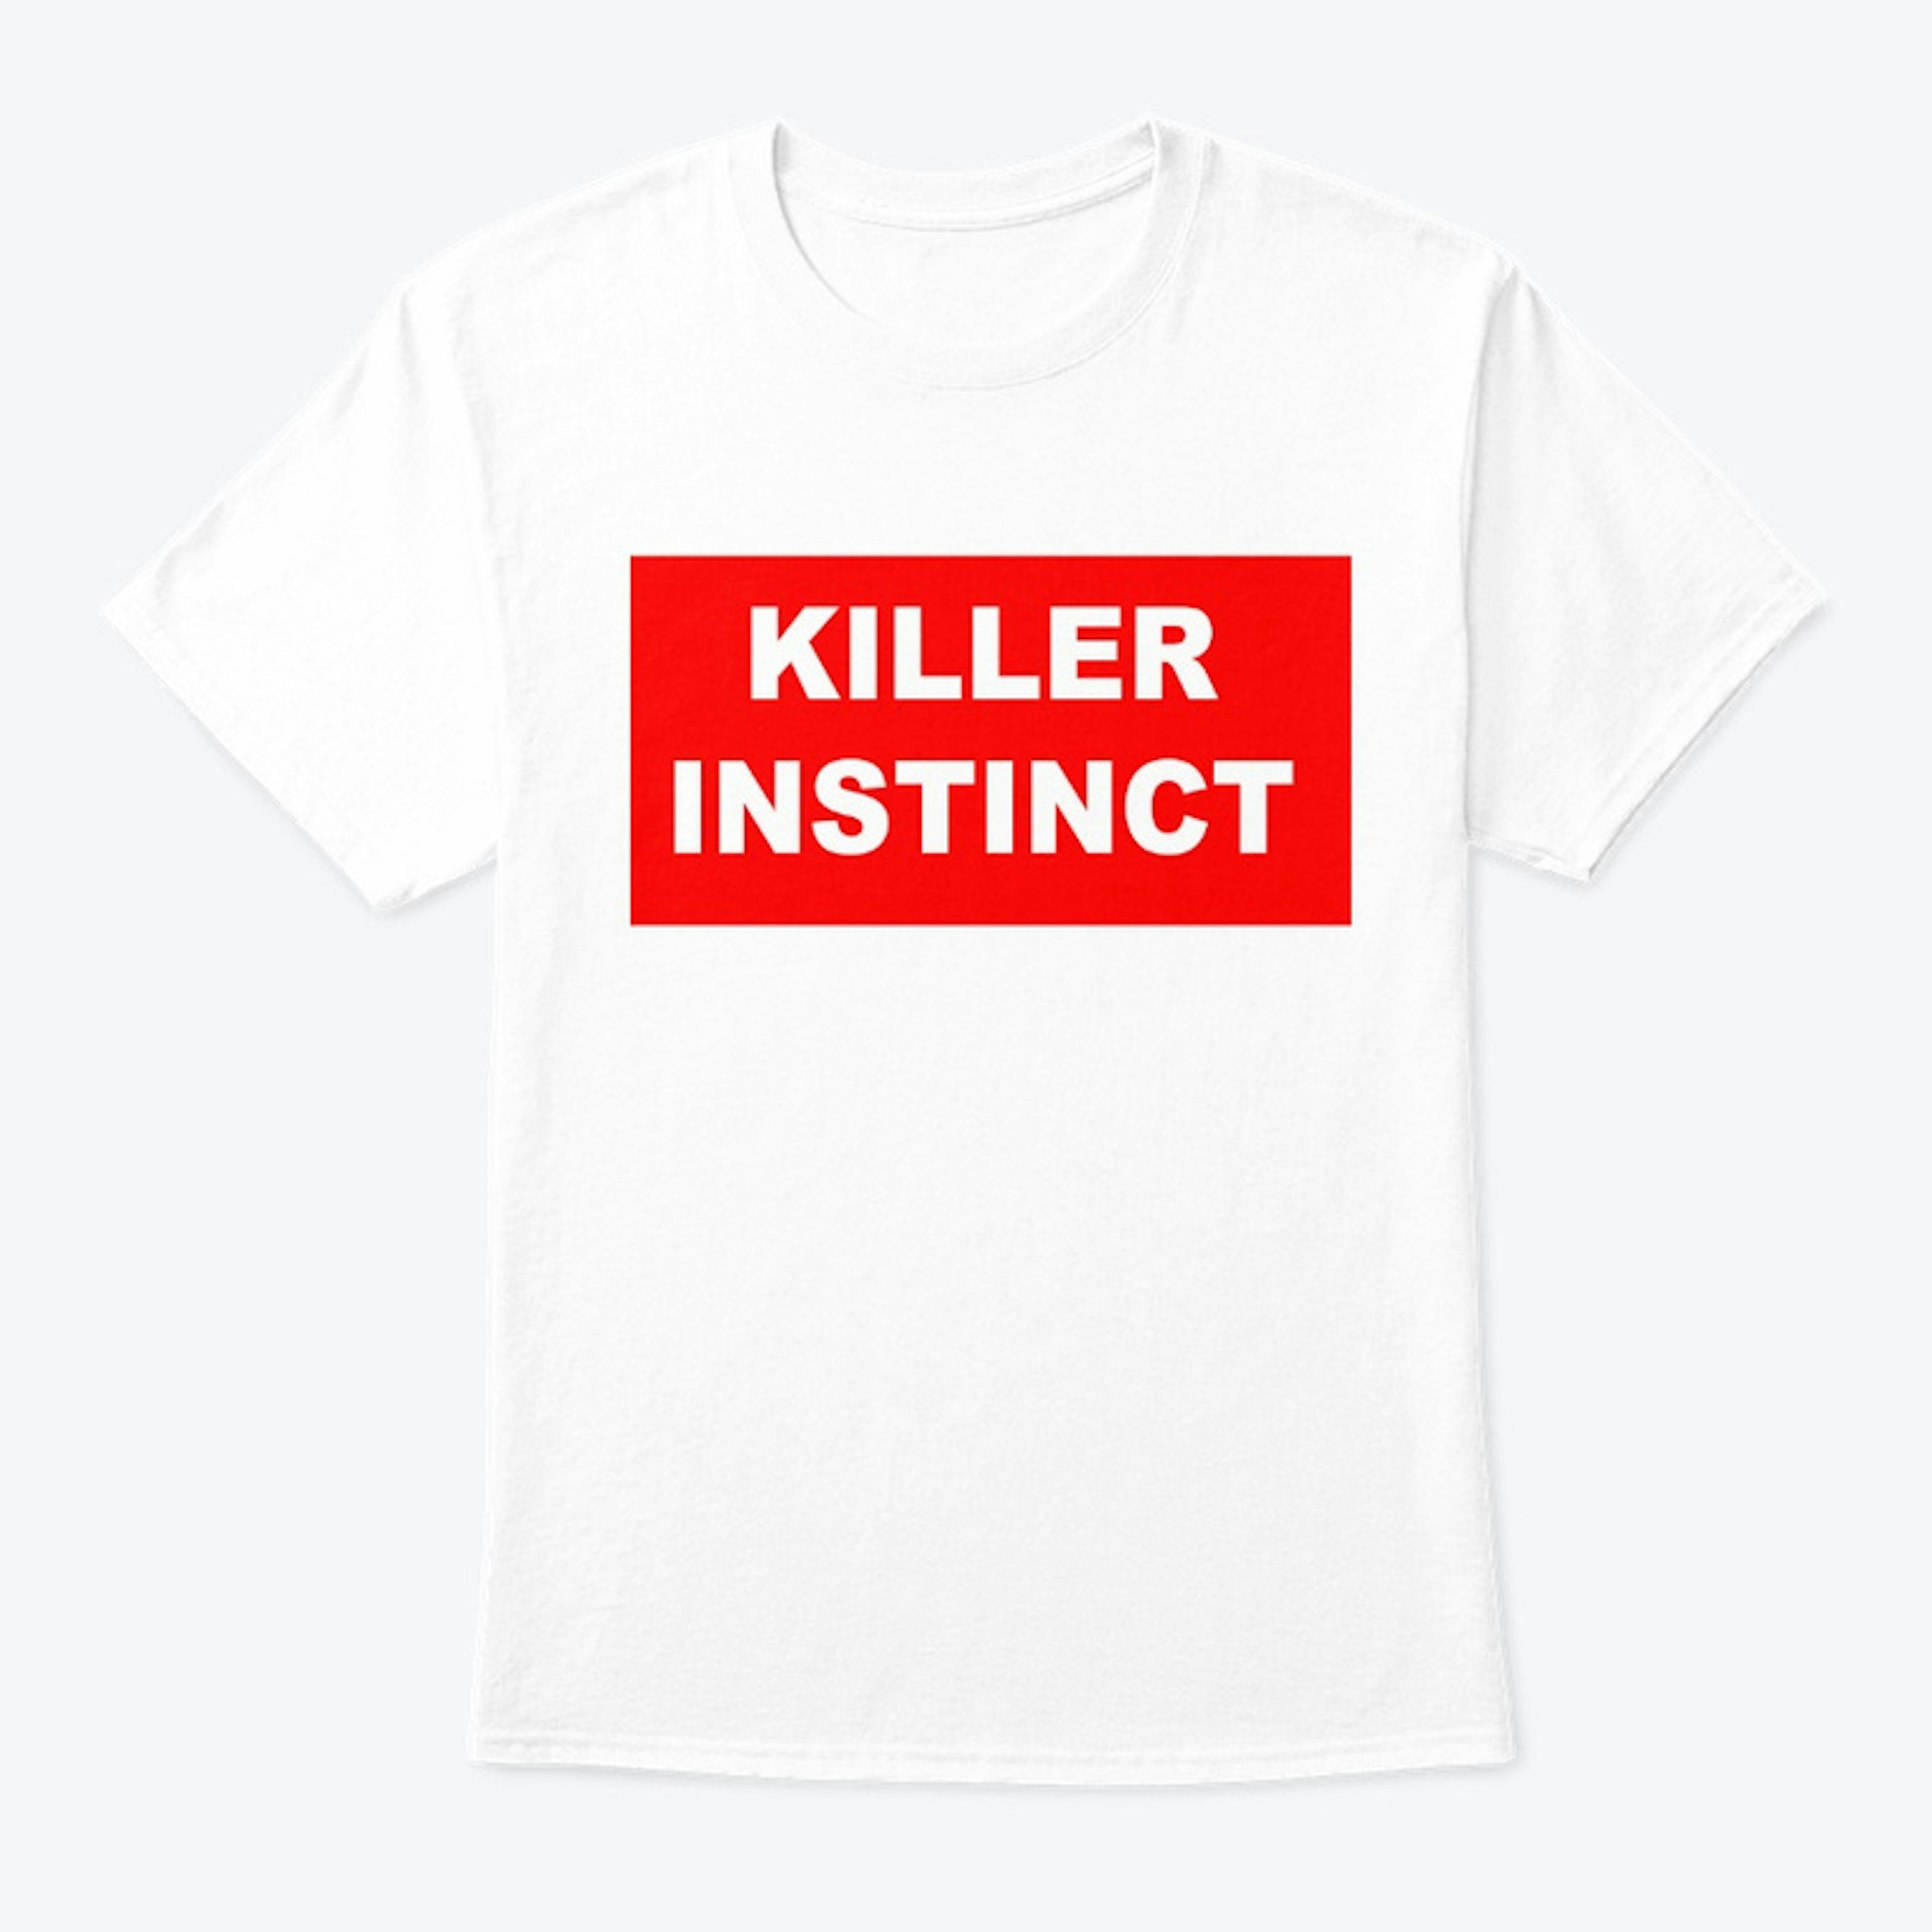 KILLER INSTINCT CLASSIC